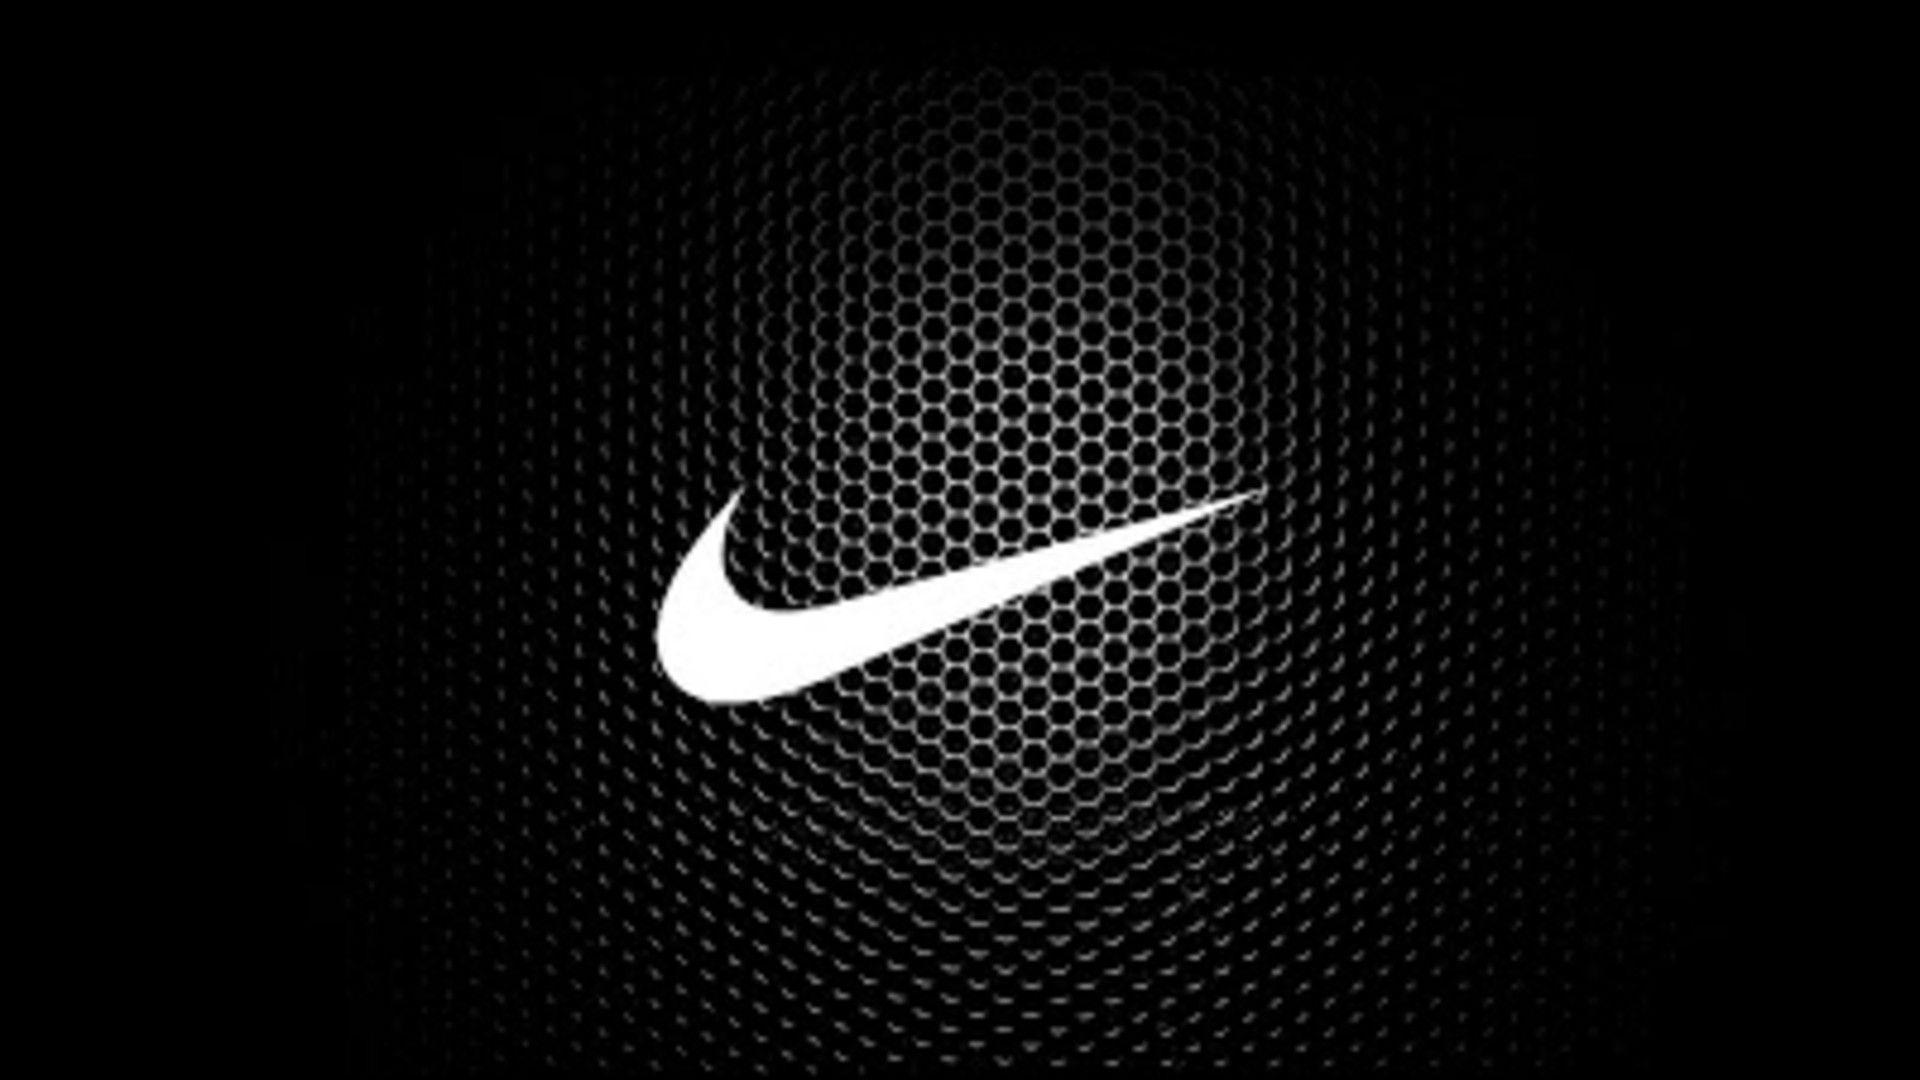 Bạn đang tìm kiếm một hình nền đẹp mang phong cách thể thao? Những hình ảnh đen Nike trên đỉnh cao sẽ khiến bạn khó có thể rời mắt. Nét đơn giản nhưng mạnh mẽ của biểu tượng Nike được kết hợp cùng tông màu đen trang trọng tạo nên một bức tranh độc đáo cho chiếc điện thoại của bạn.